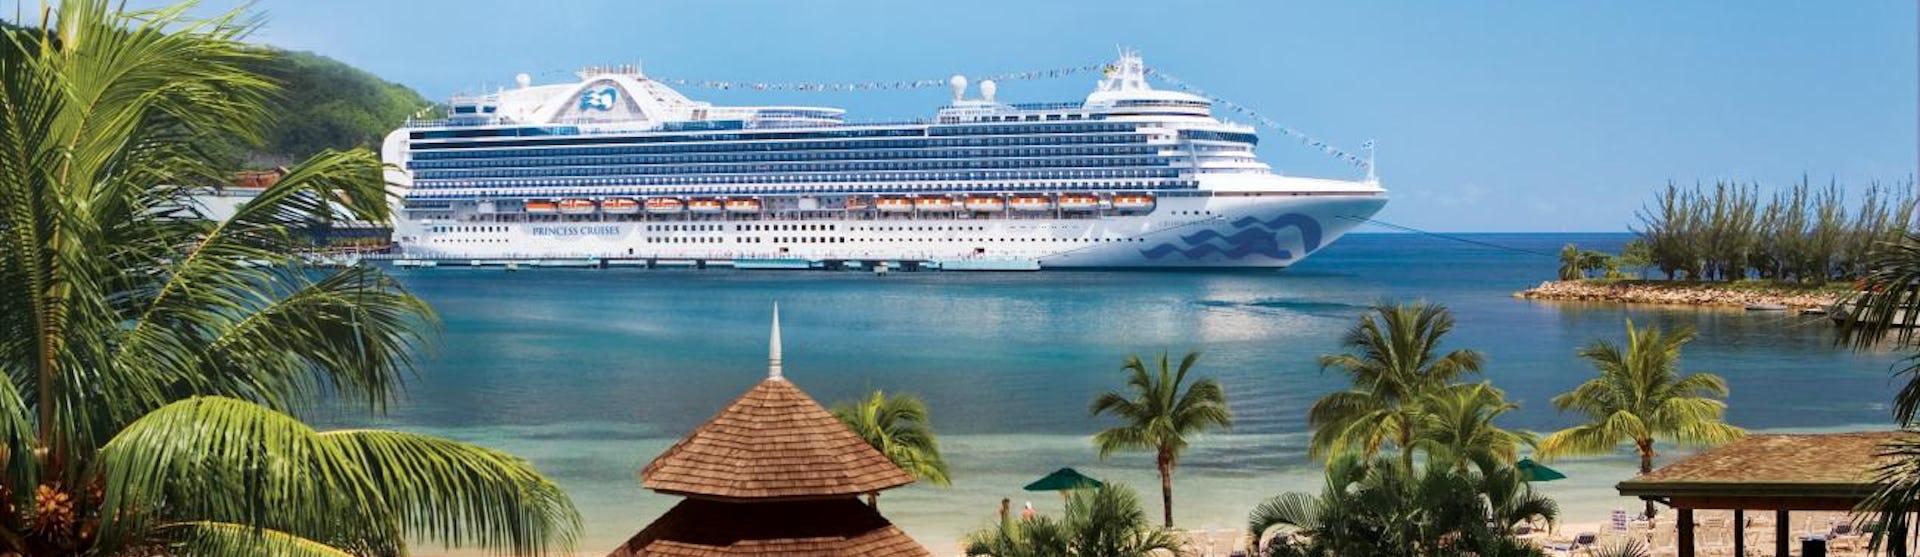 Fartyget Crown Princess ligger ankrad utanför en hamn i exotiska Jamaica. I framkant syns palmer och vit sand.